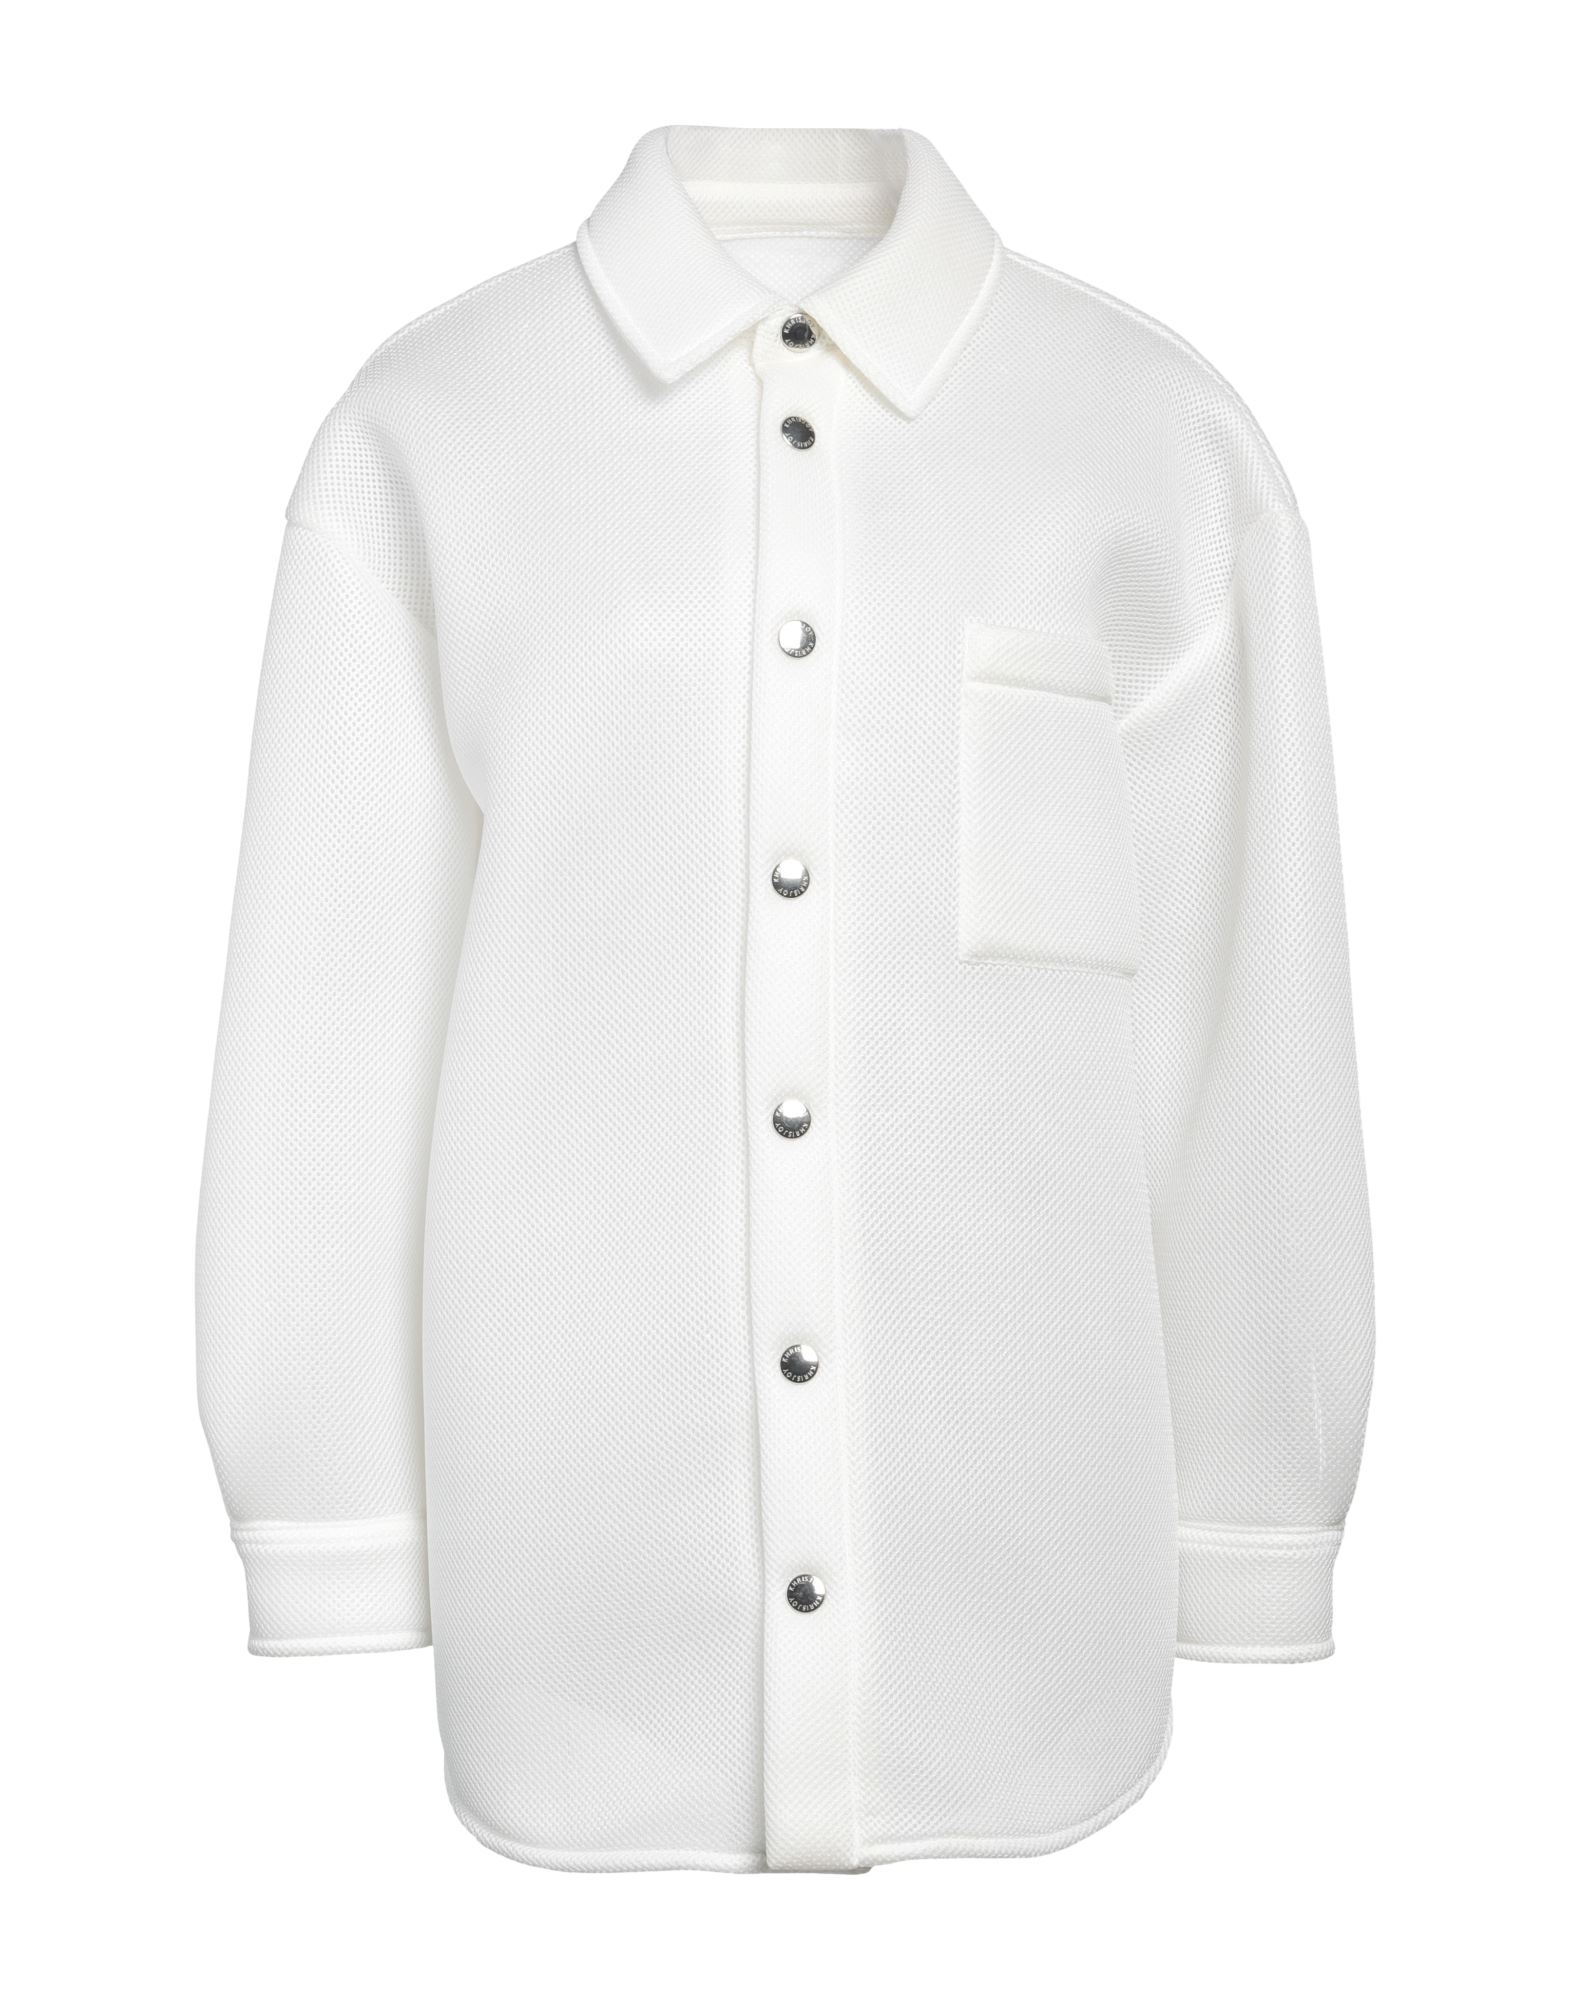 Khrisjoy Jackets In White